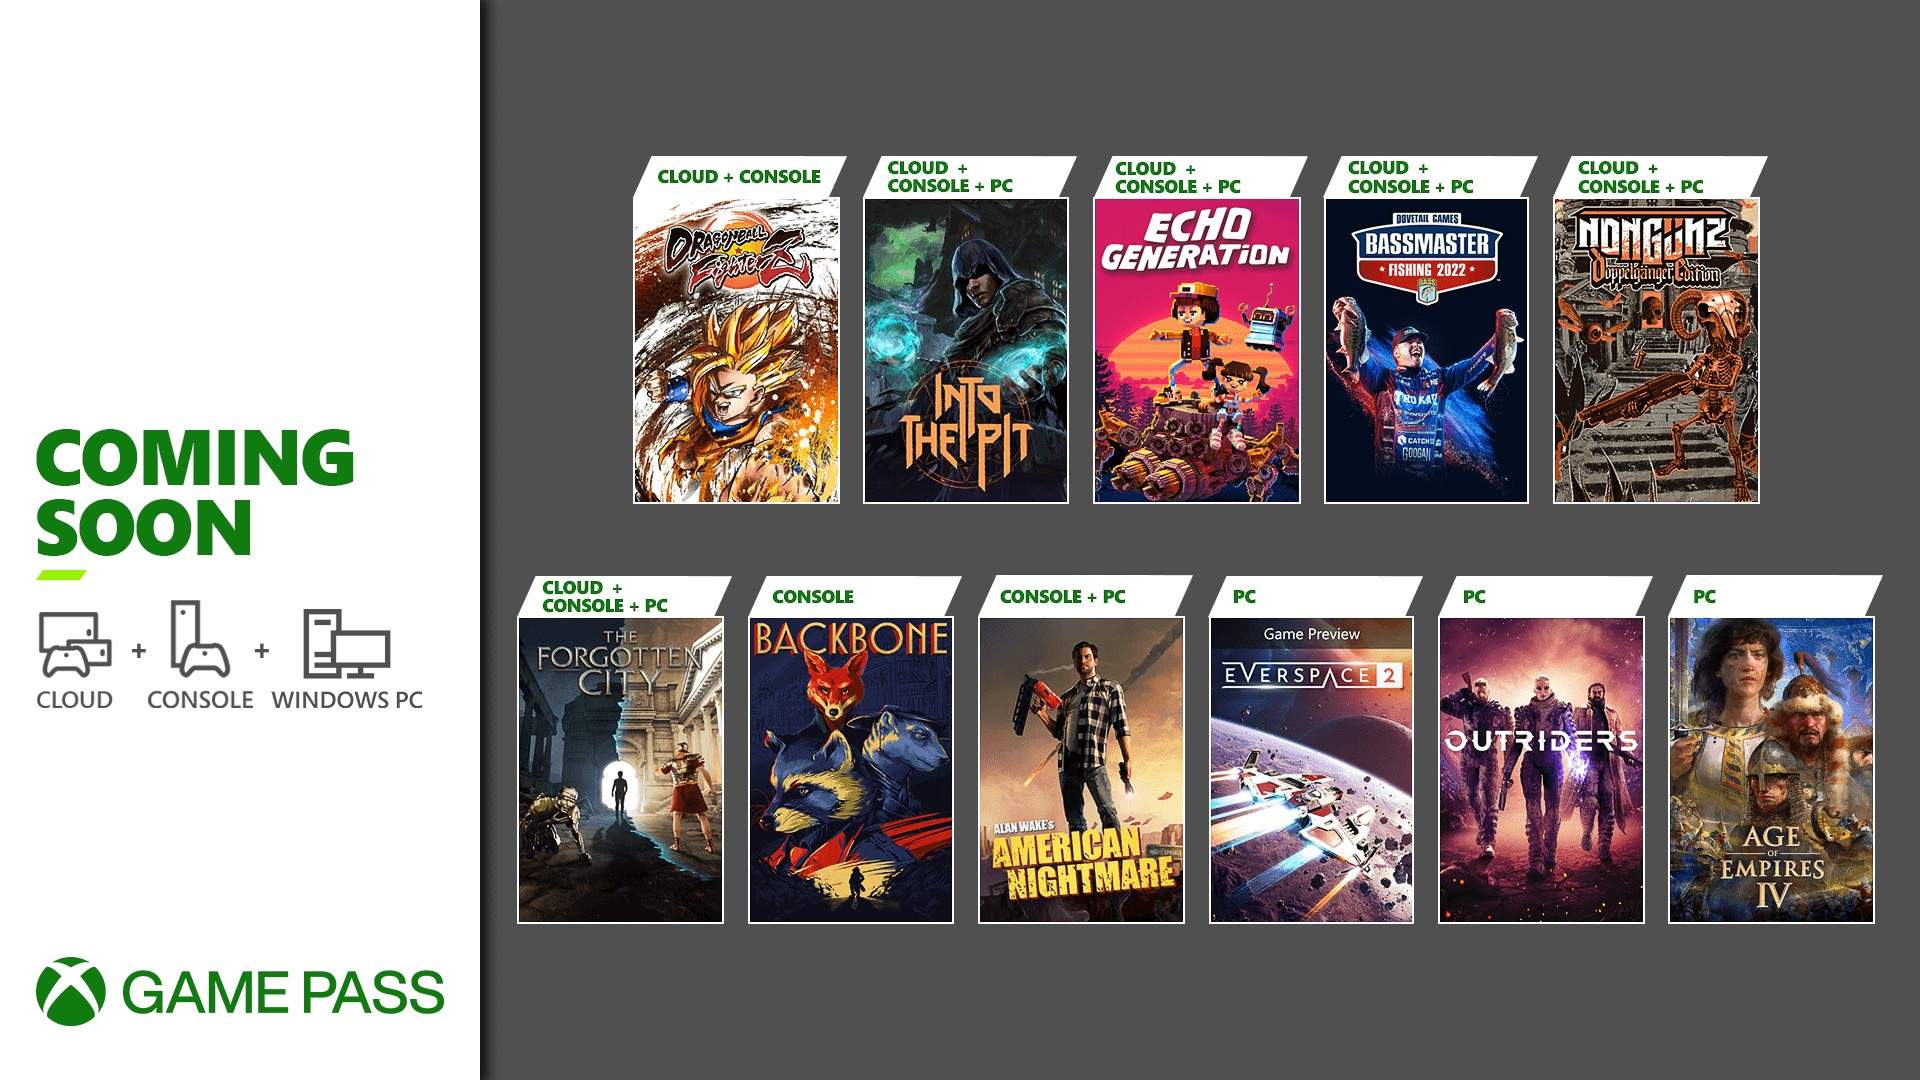 Games With Gold : os jogos gratuitos em dezembro de 2022 - Xbox Wire em  Português